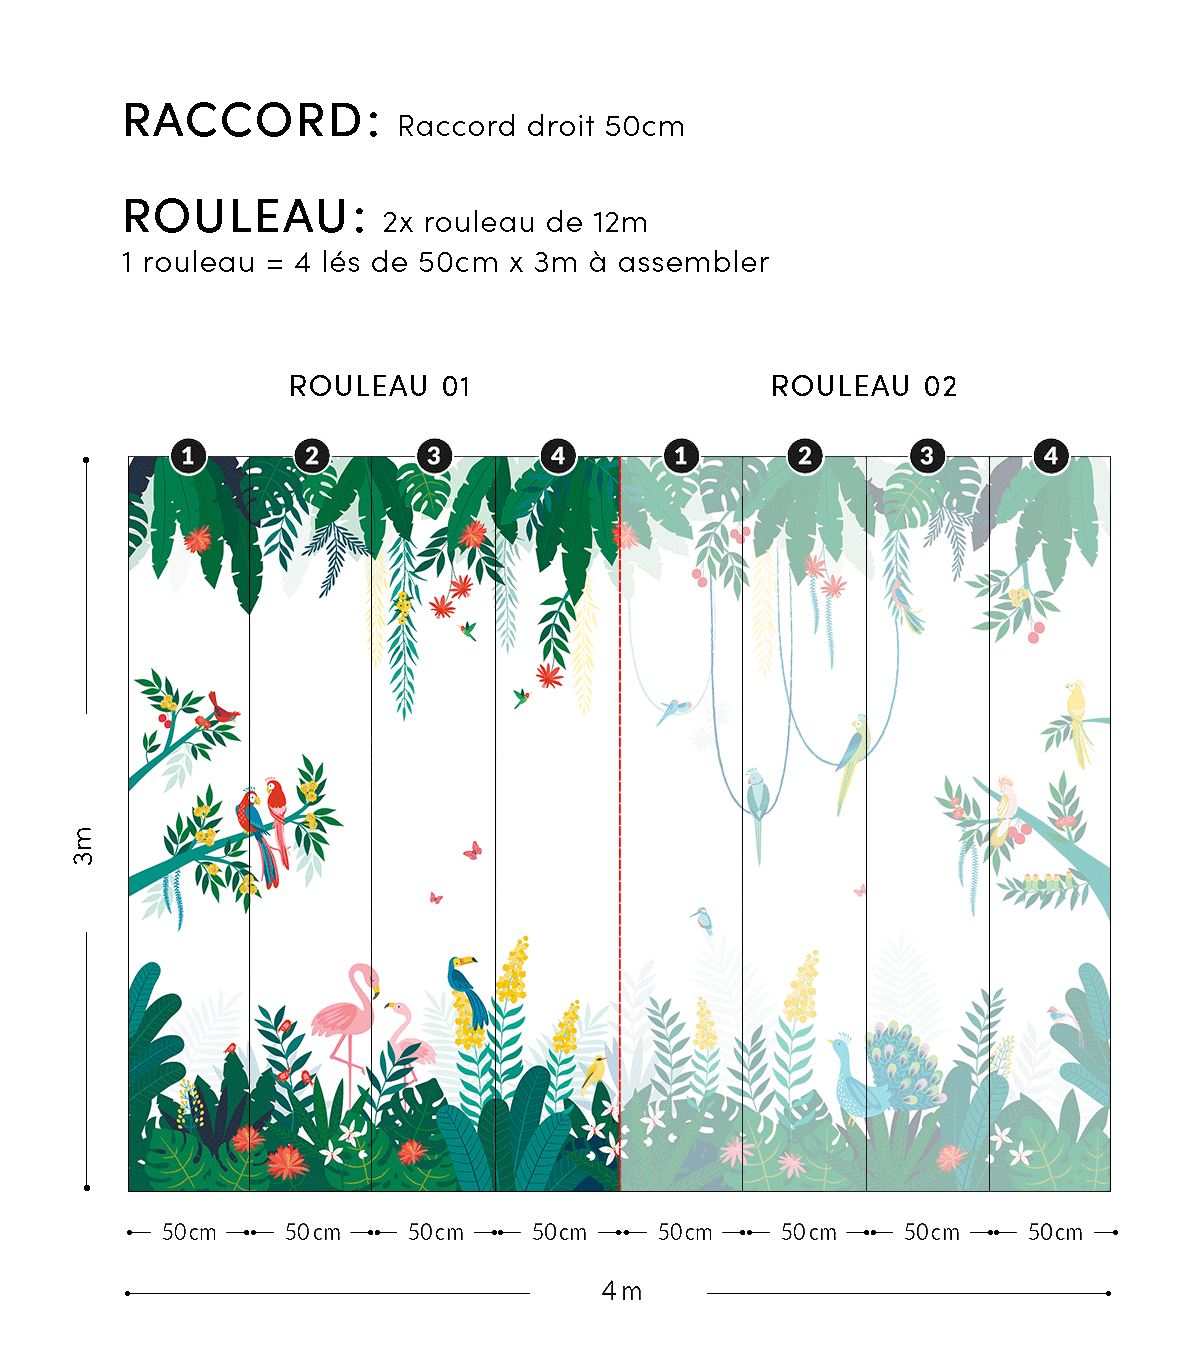 RIO - Papier peint panoramique - Jungle et oiseaux